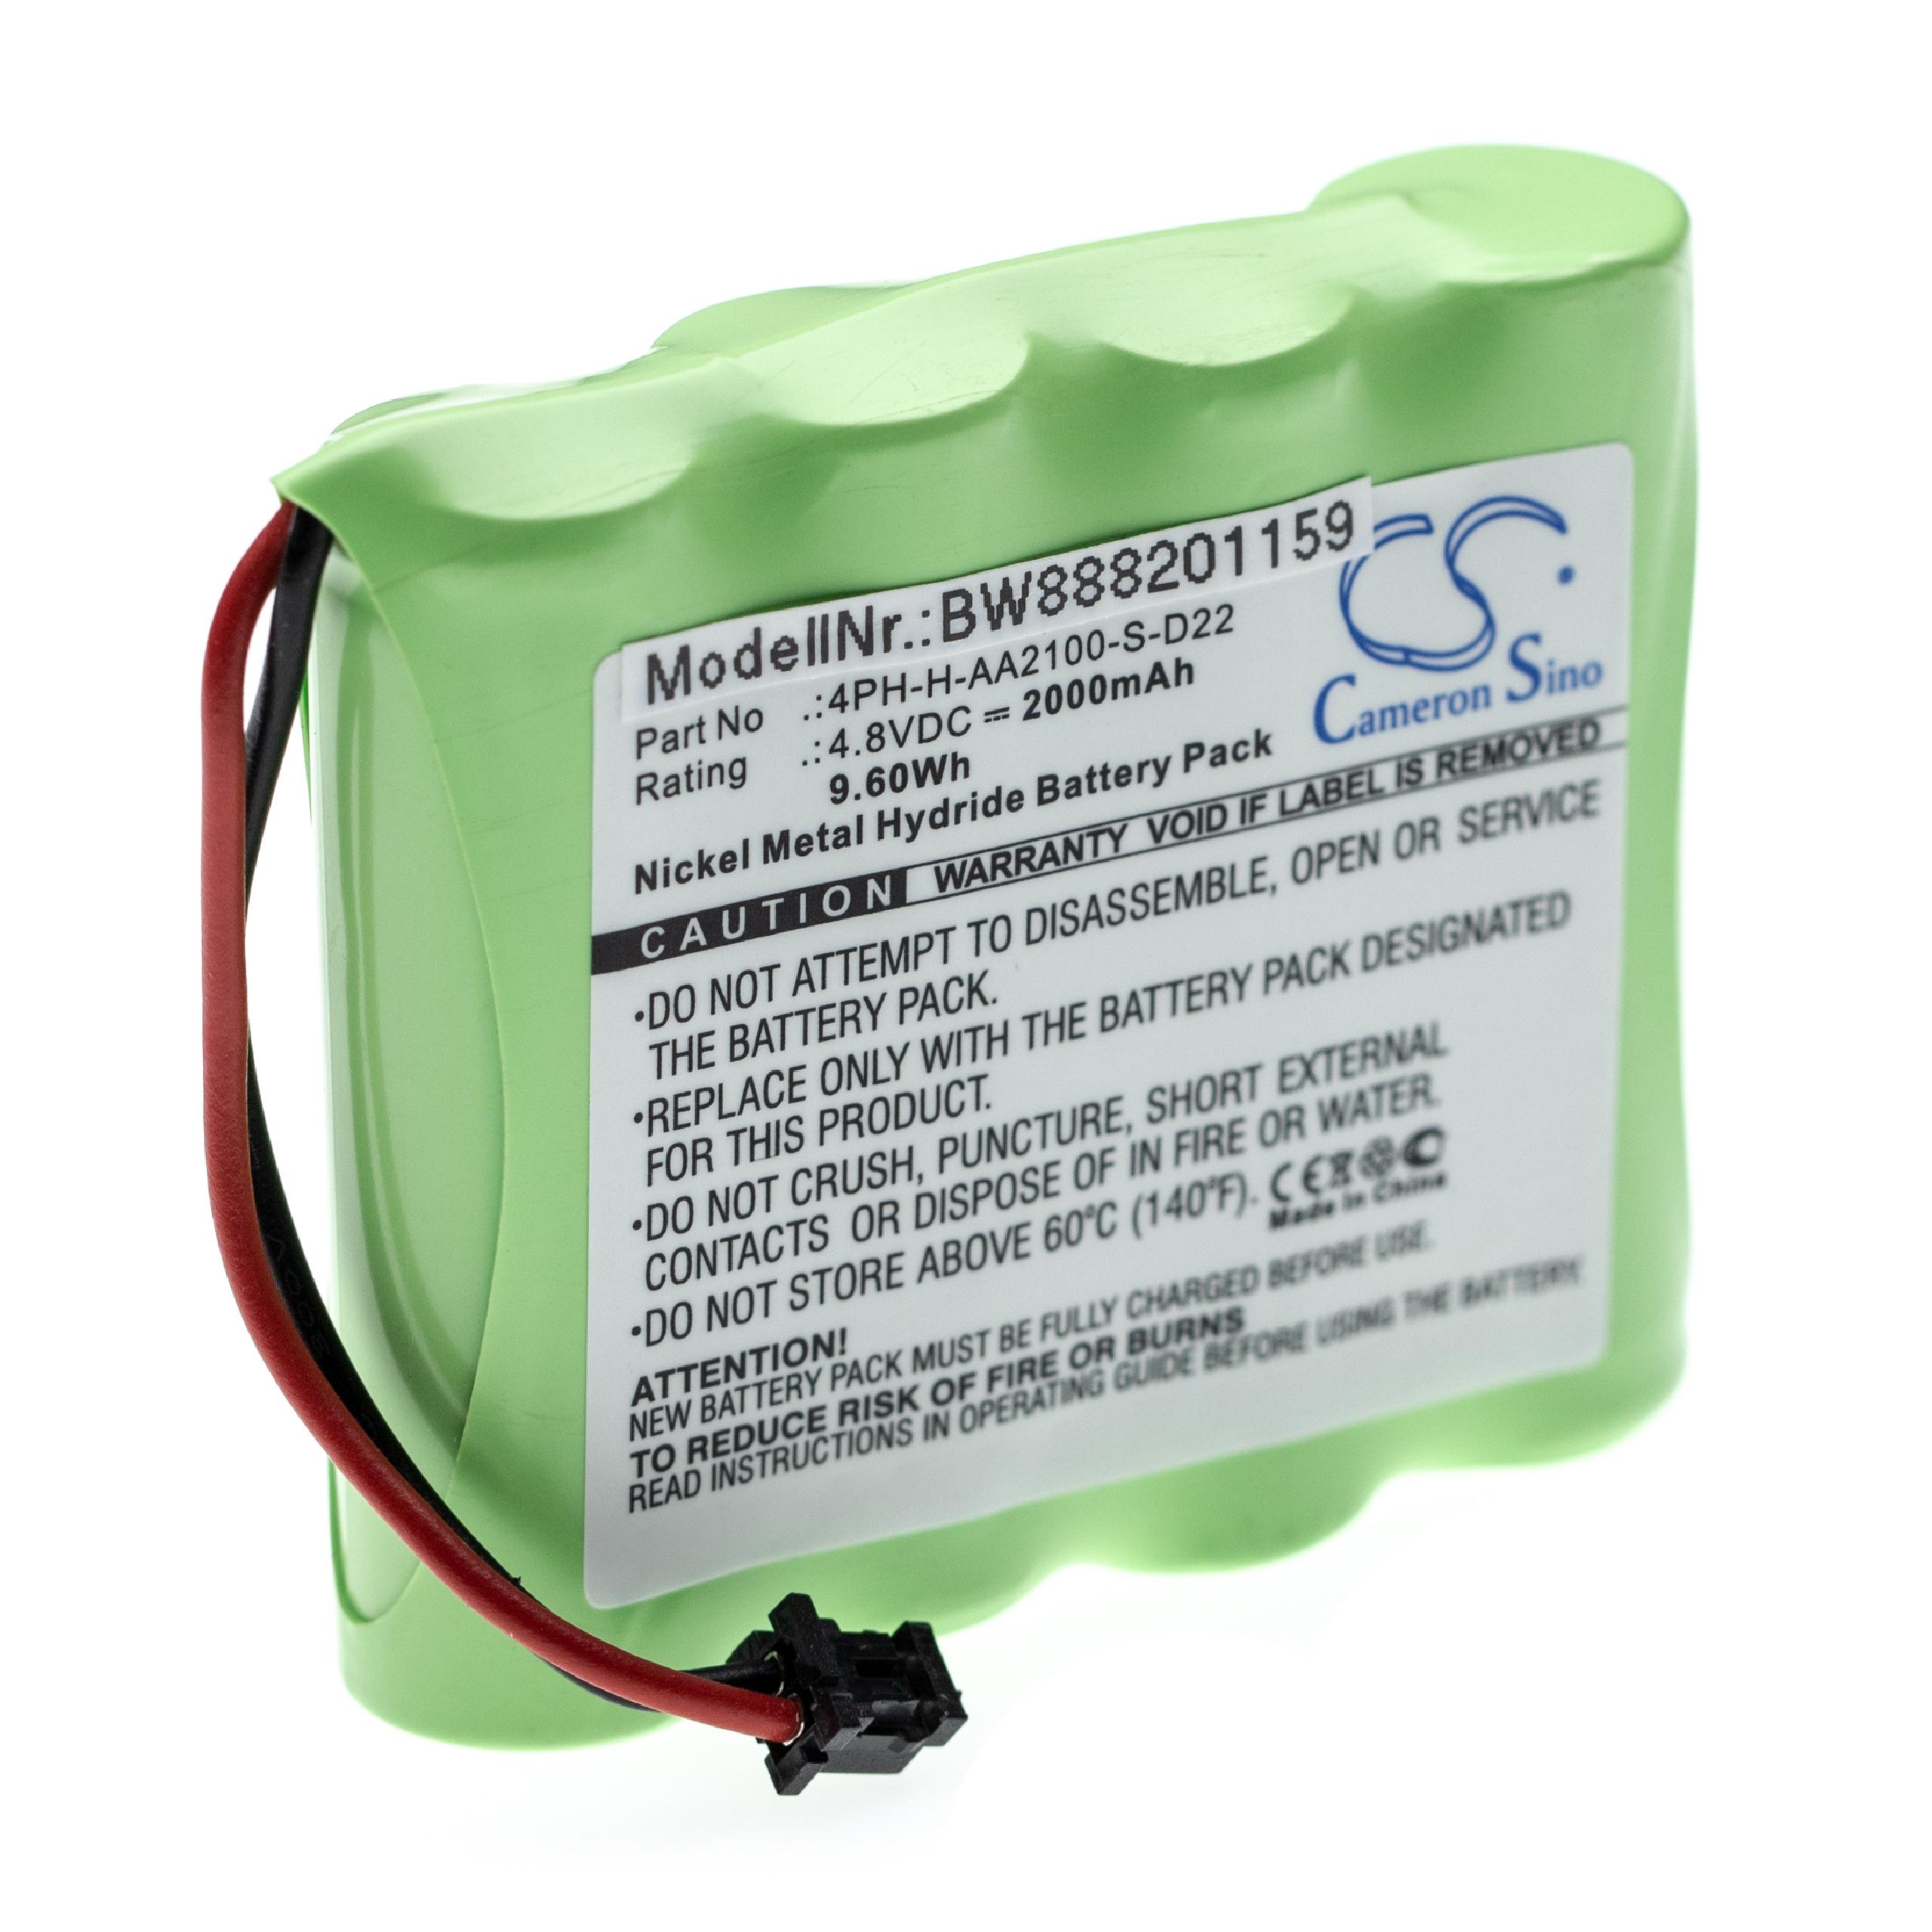 Alarm System Battery Replacement for DSC 17000153, 4PH-H-AA2100-S-D22, BATT2148V - 2000mAh 4.8V NiMH